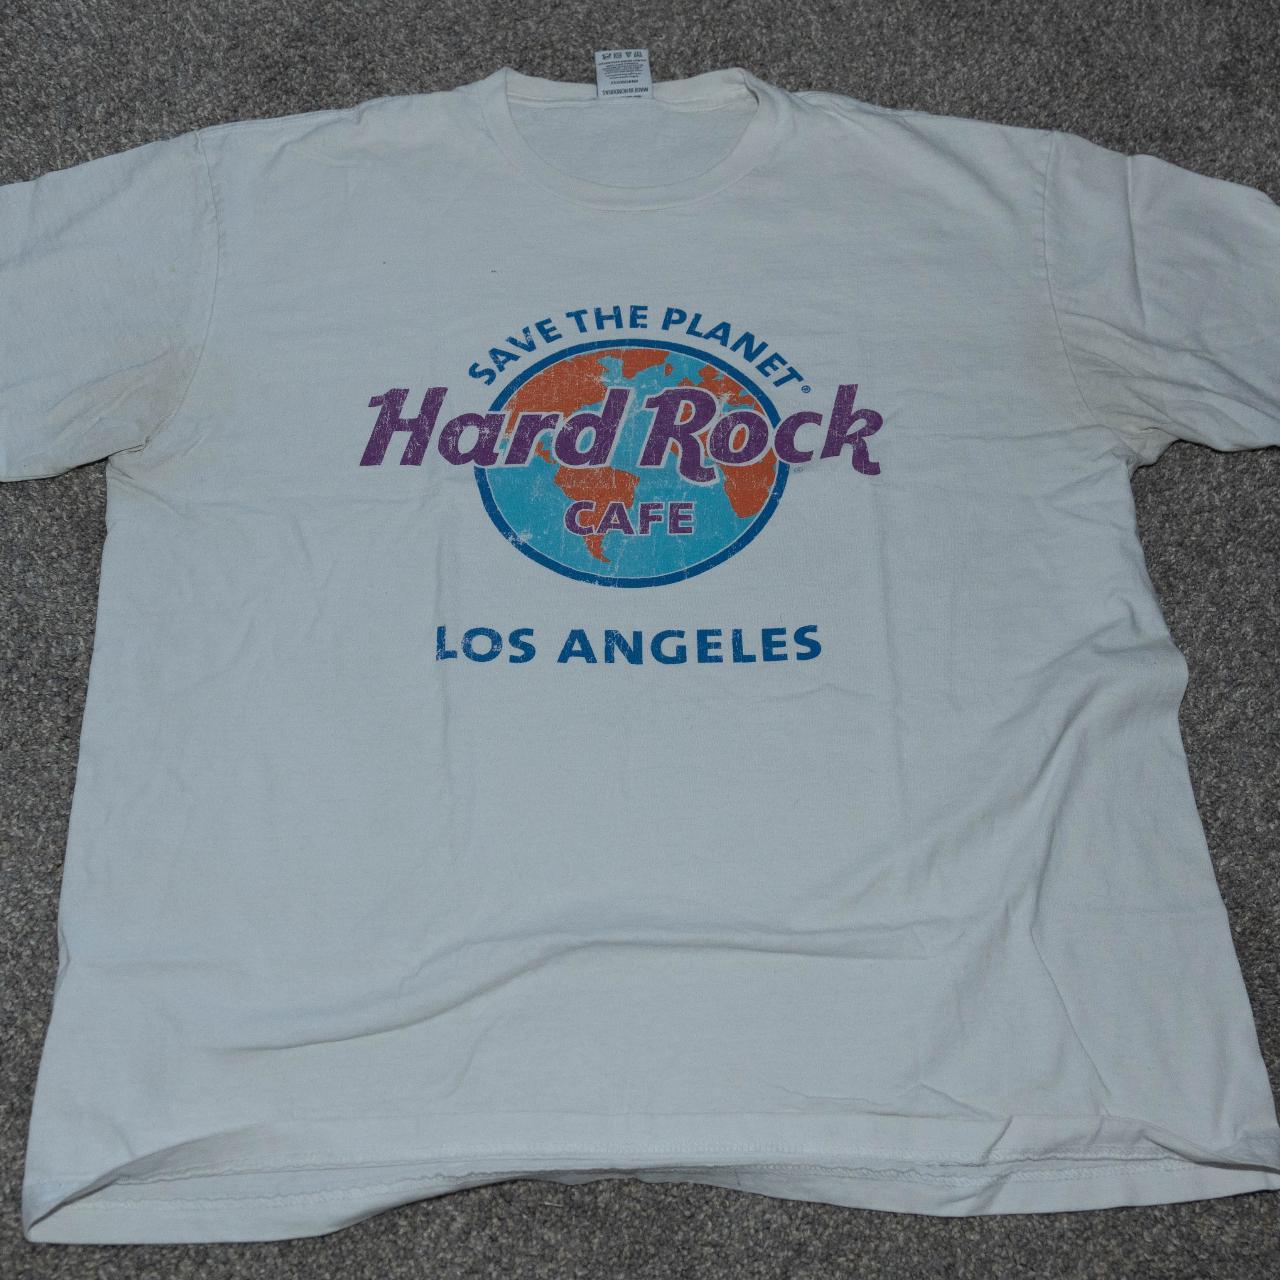 Hard Rock Cafe Men's multi T-shirt | Depop